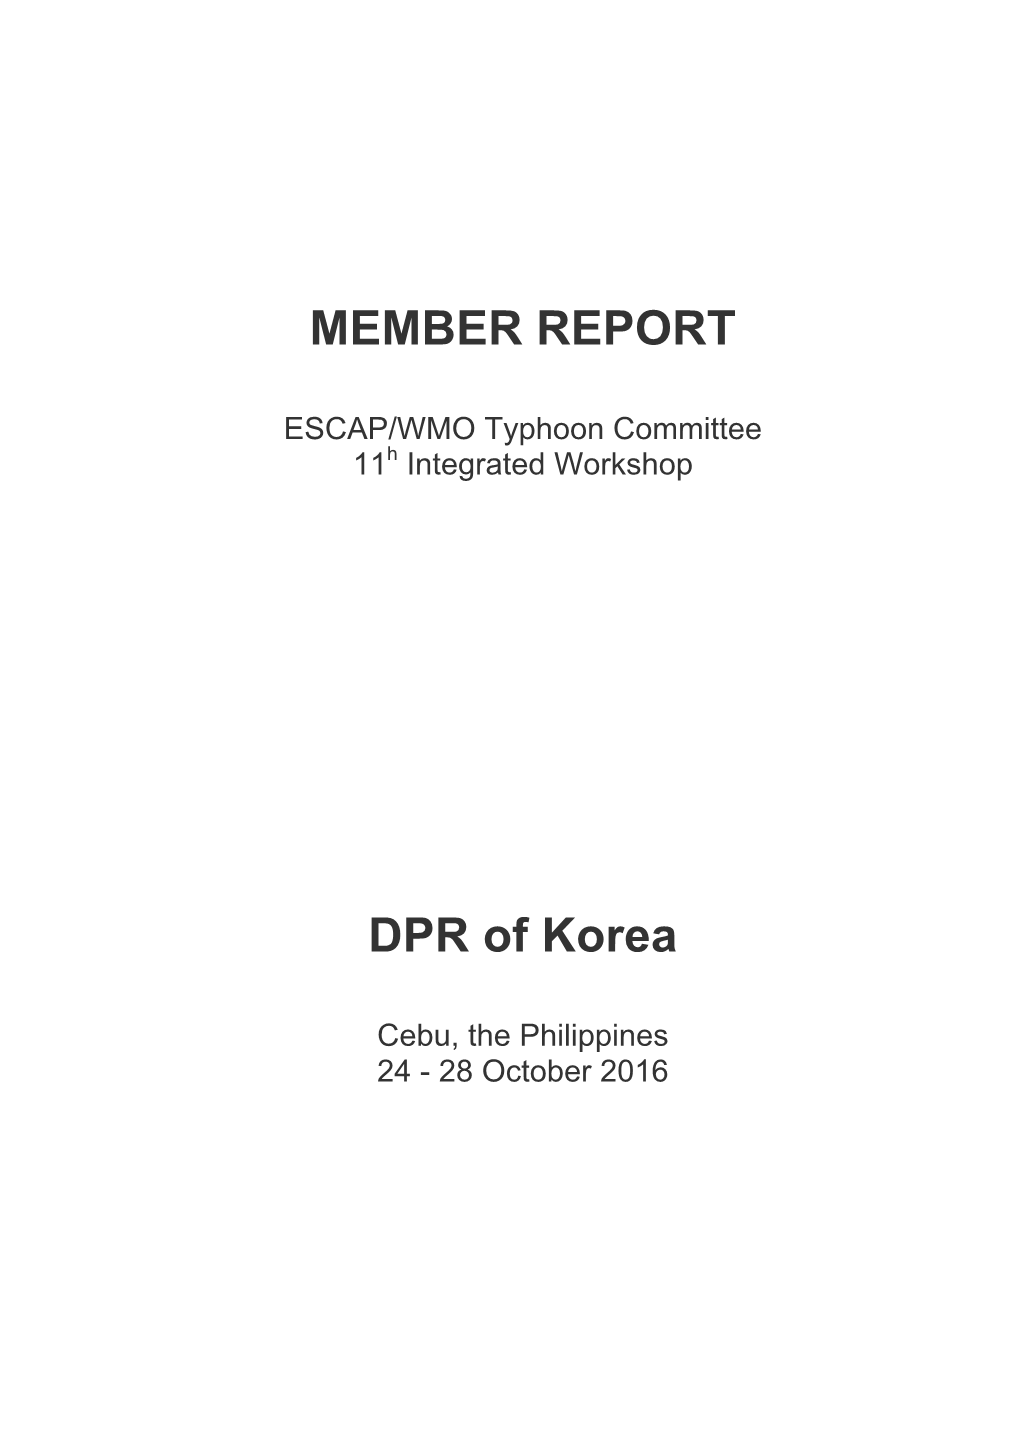 MEMBER REPORT DPR of Korea